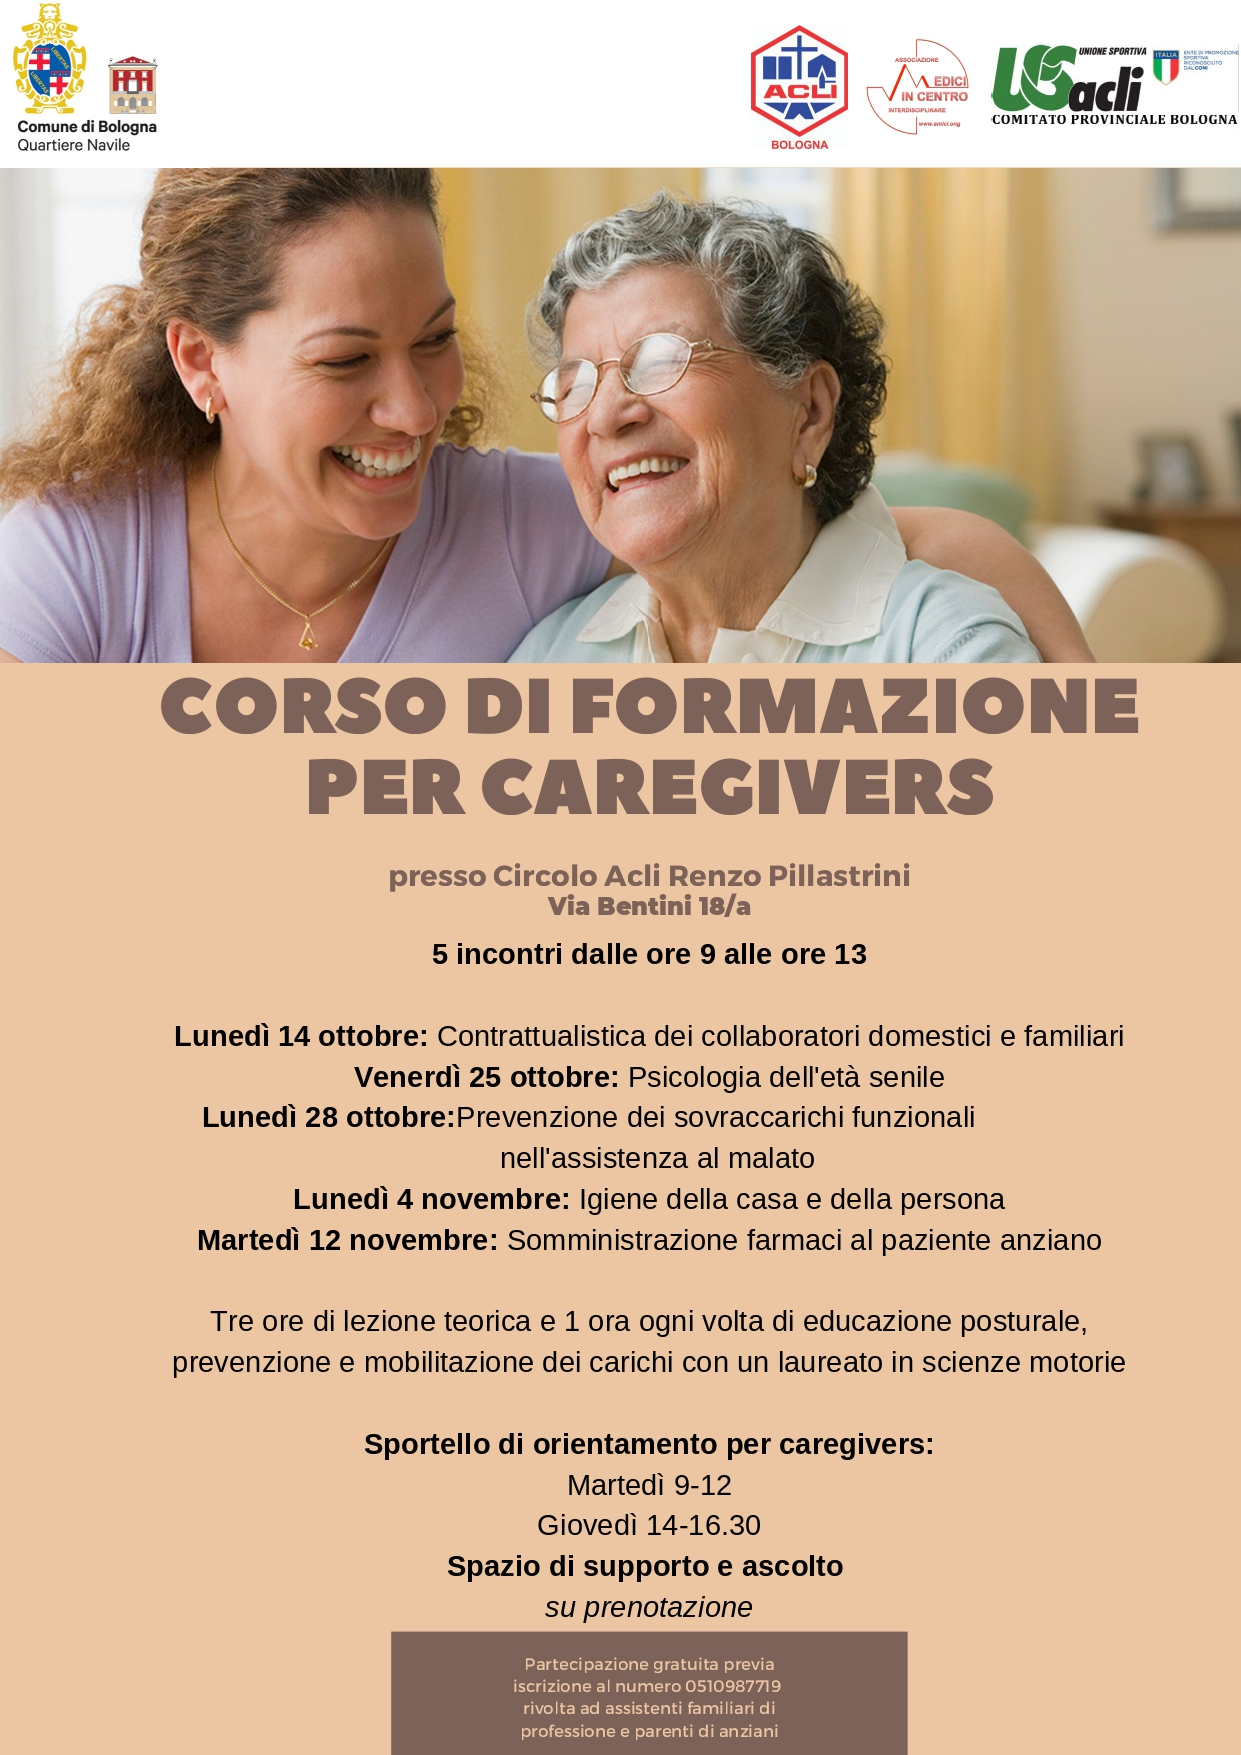 Corso di formazione per caregivers Navile_page-0001.jpg